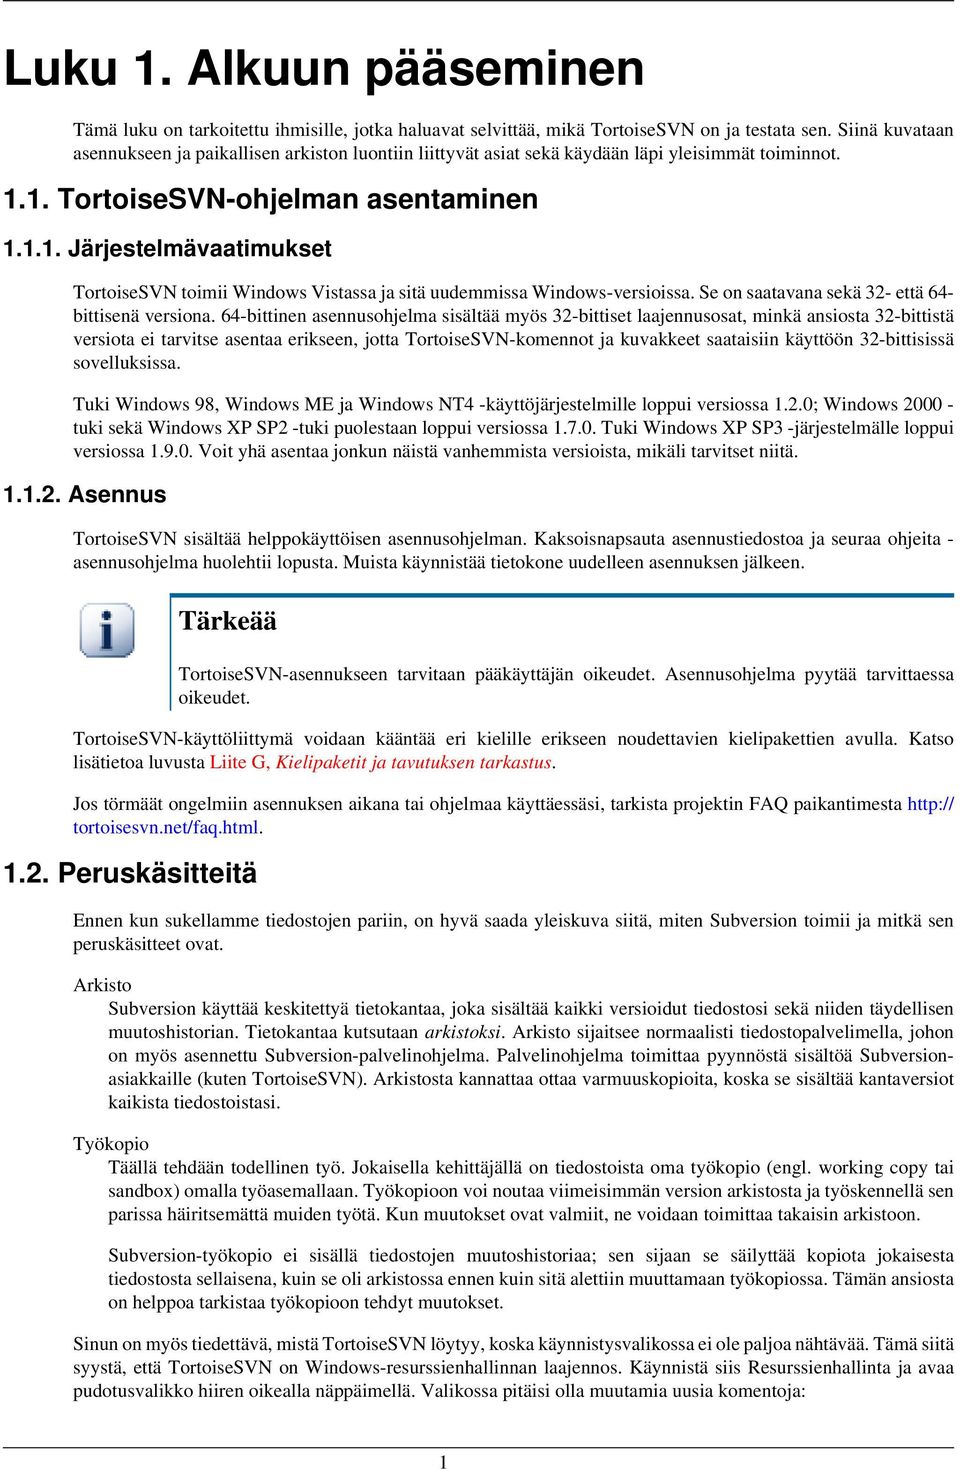 1. TortoiseSVN-ohjelman asentaminen 1.1.1. Järjestelmävaatimukset TortoiseSVN toimii Windows Vistassa ja sitä uudemmissa Windows-versioissa. Se on saatavana sekä 32- että 64bittisenä versiona.